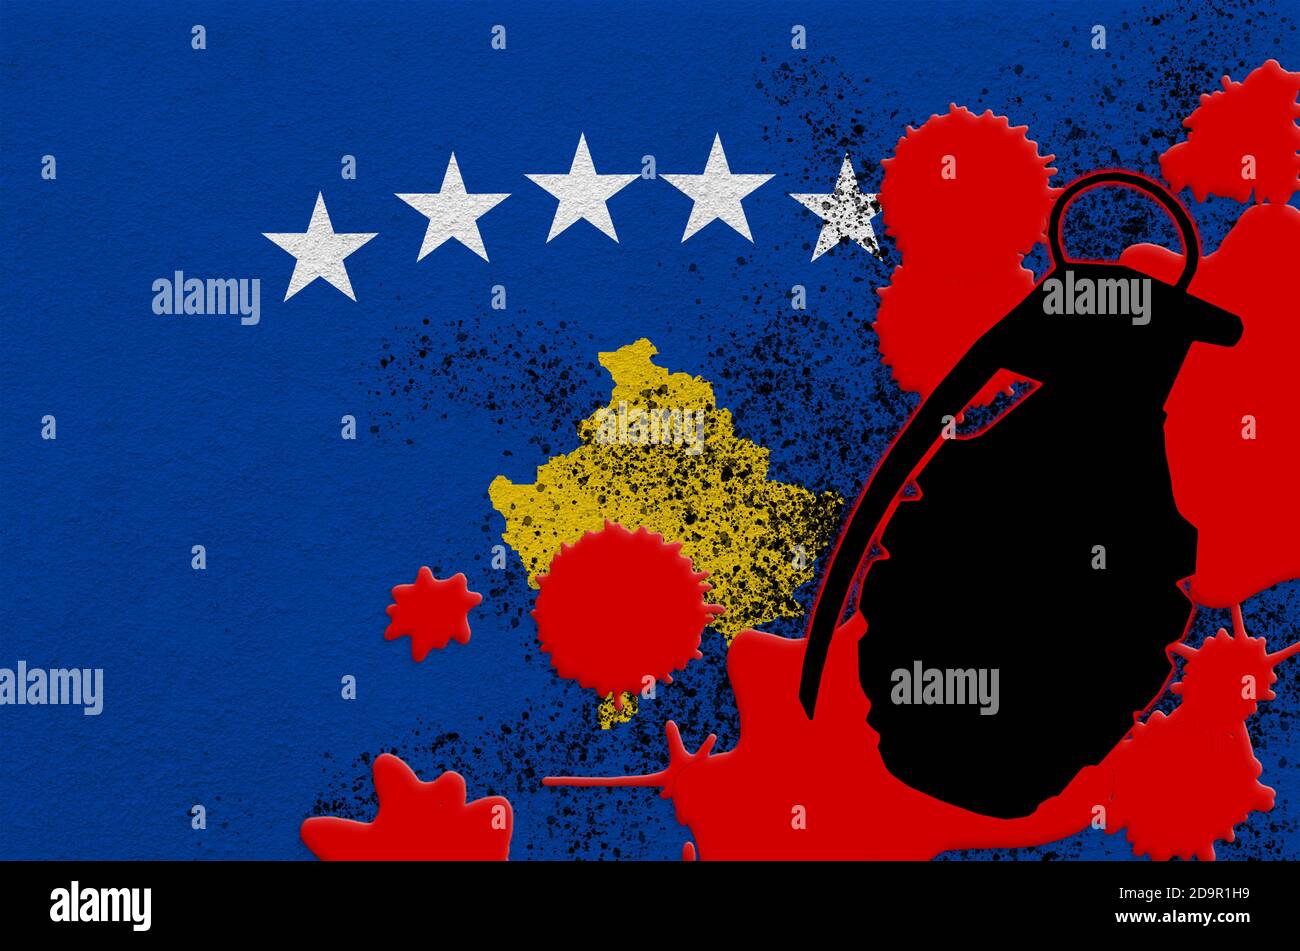 Drapeau du Kosovo et grenade à scories MK2 dans le sang rouge. Concept d'attaque terroriste ou d'opérations militaires avec un résultat mortel. Utilisation d'armes projectiles dangereuses Banque D'Images